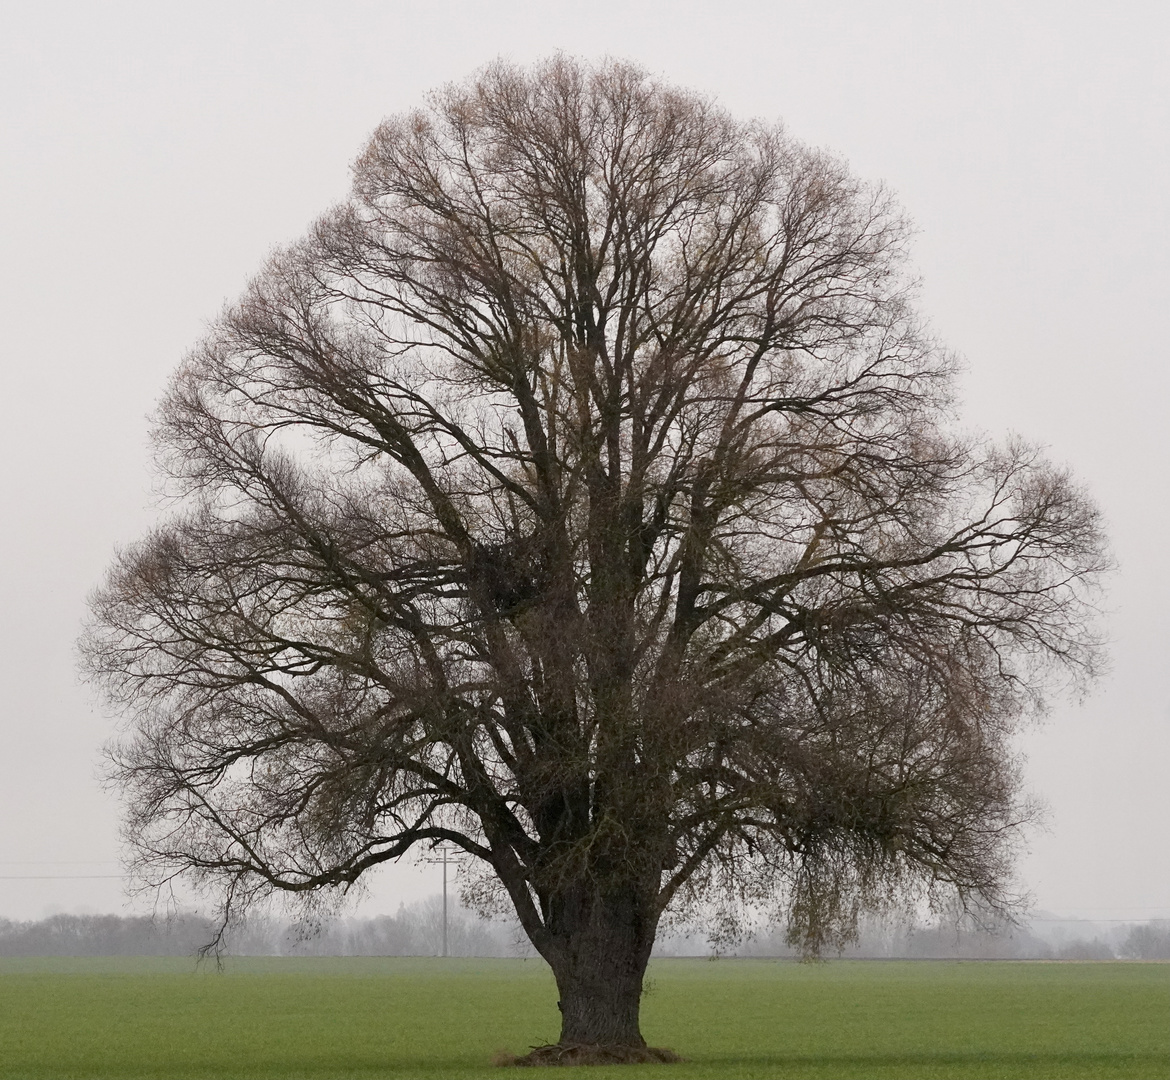 Ein Baum im Laufe des Jahres (27. November)